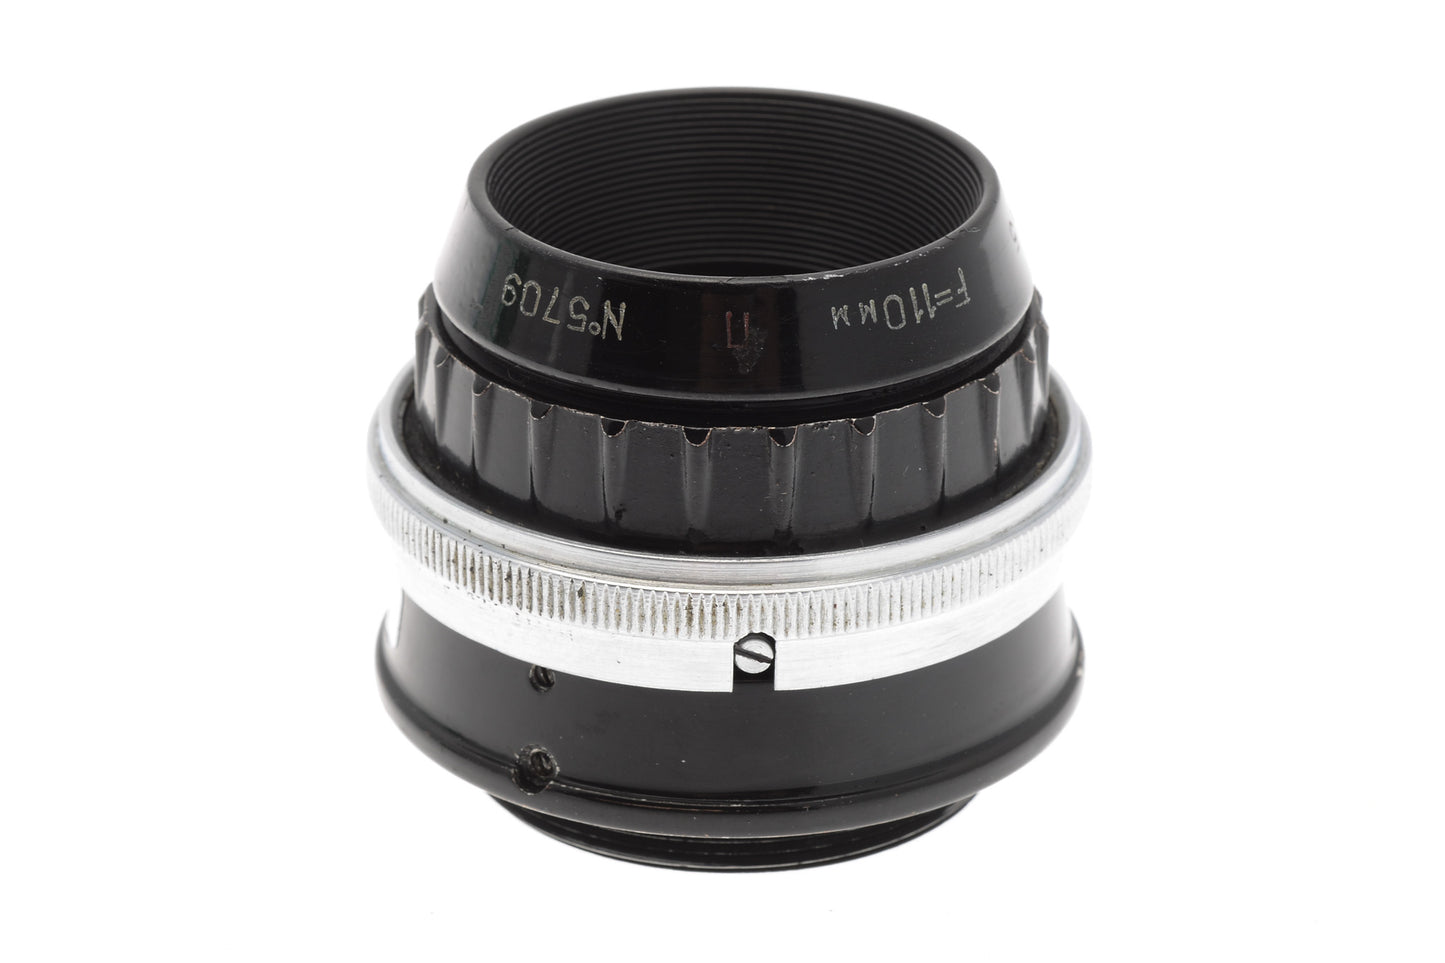 Industar 110mm f4.5 - Lens